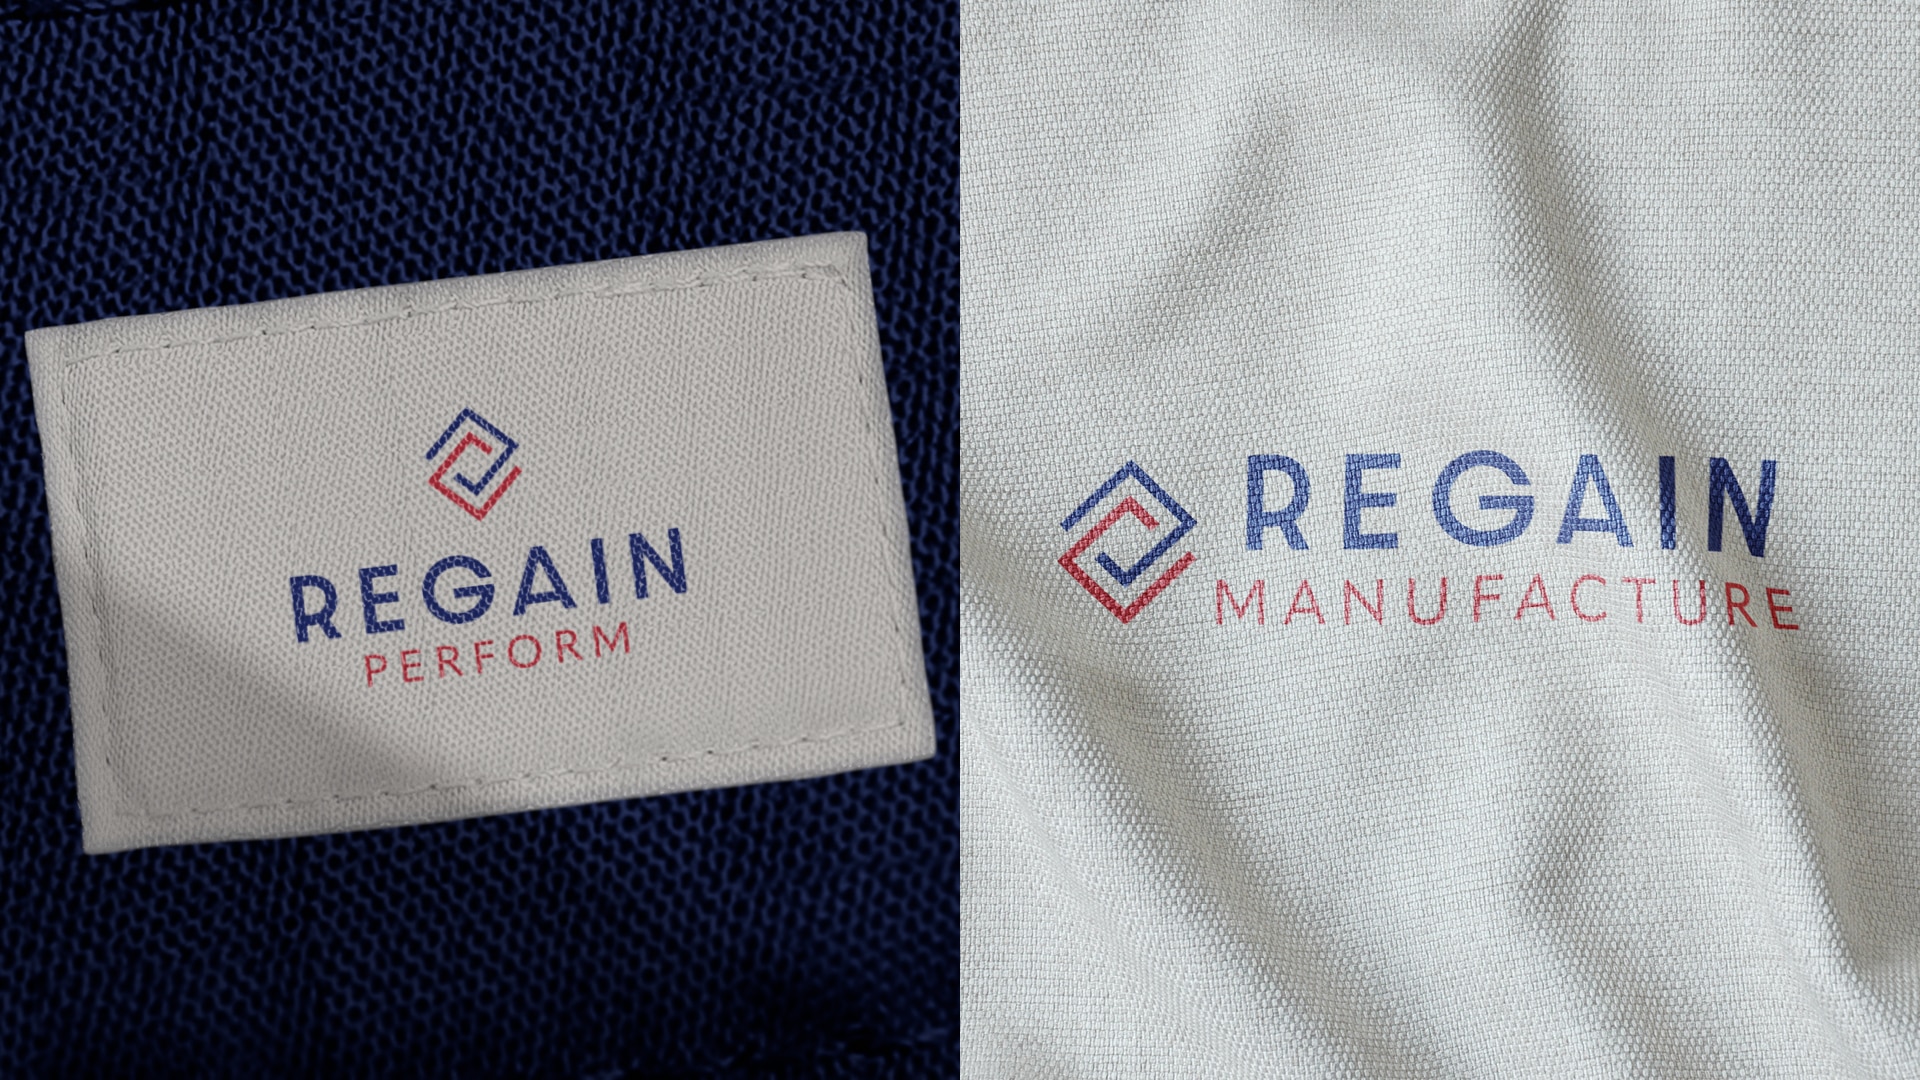 Logotype de Regain brodés sur les étiquettes de vêtements suite à la création d'identité visuelle.